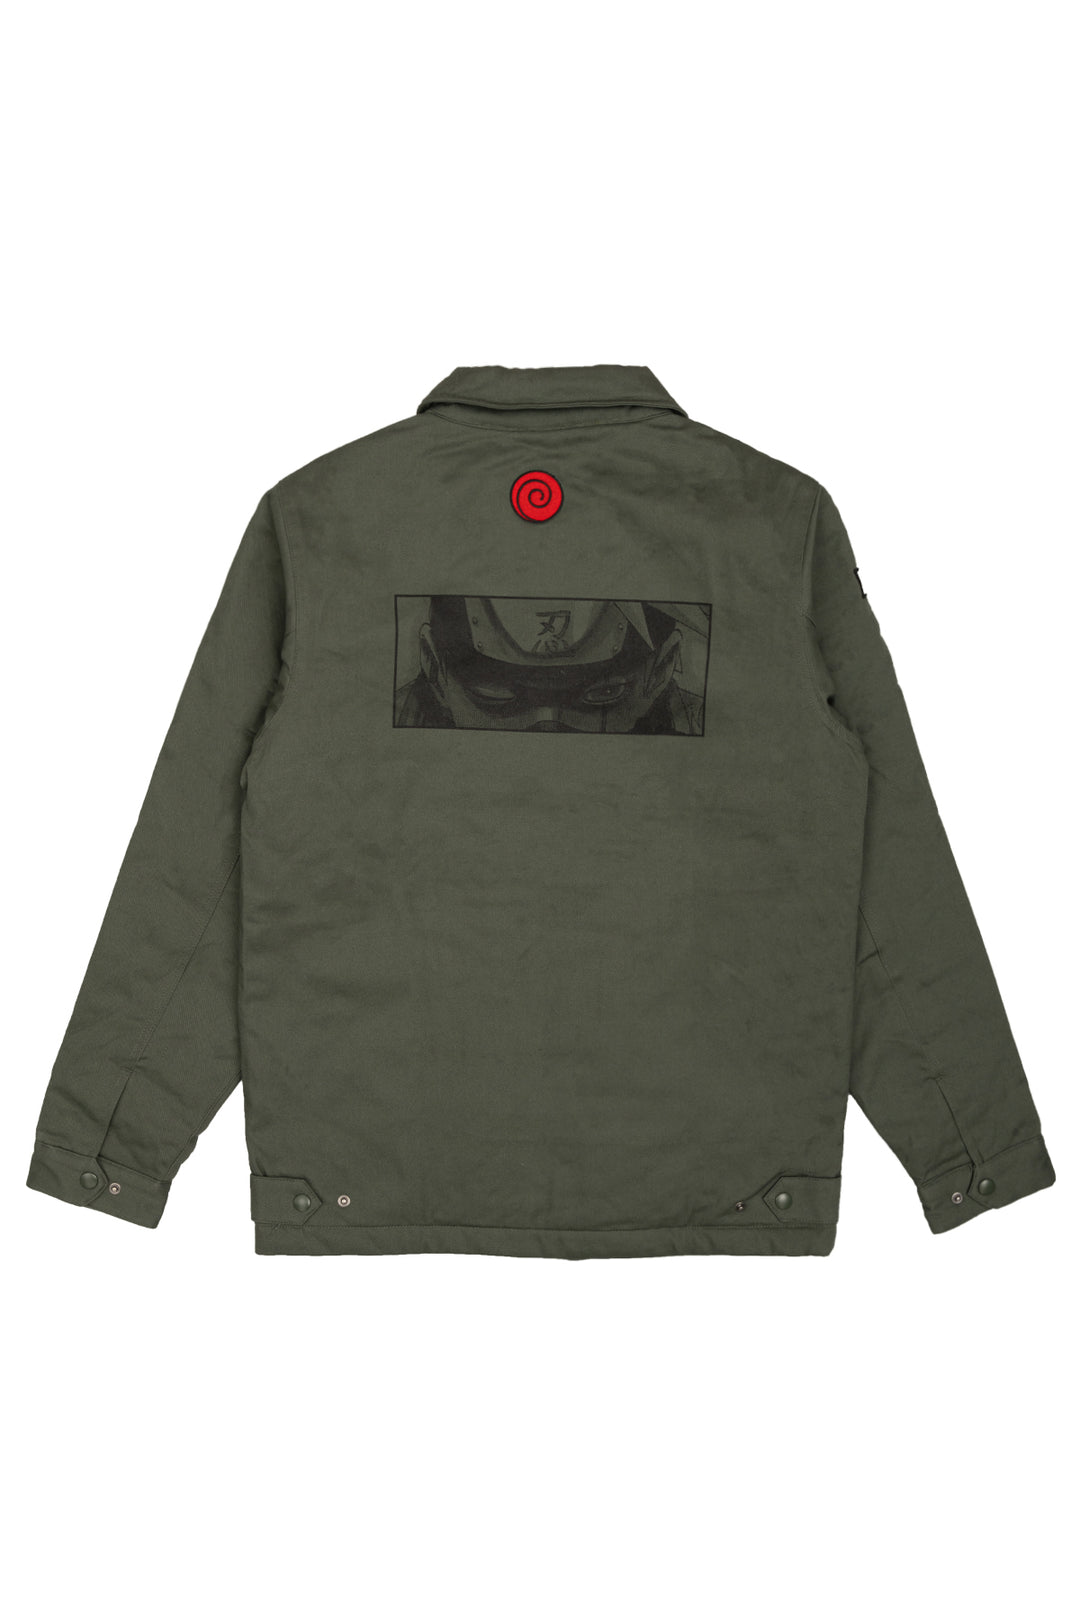 Naruto Kakashi Service Jacket - Olive